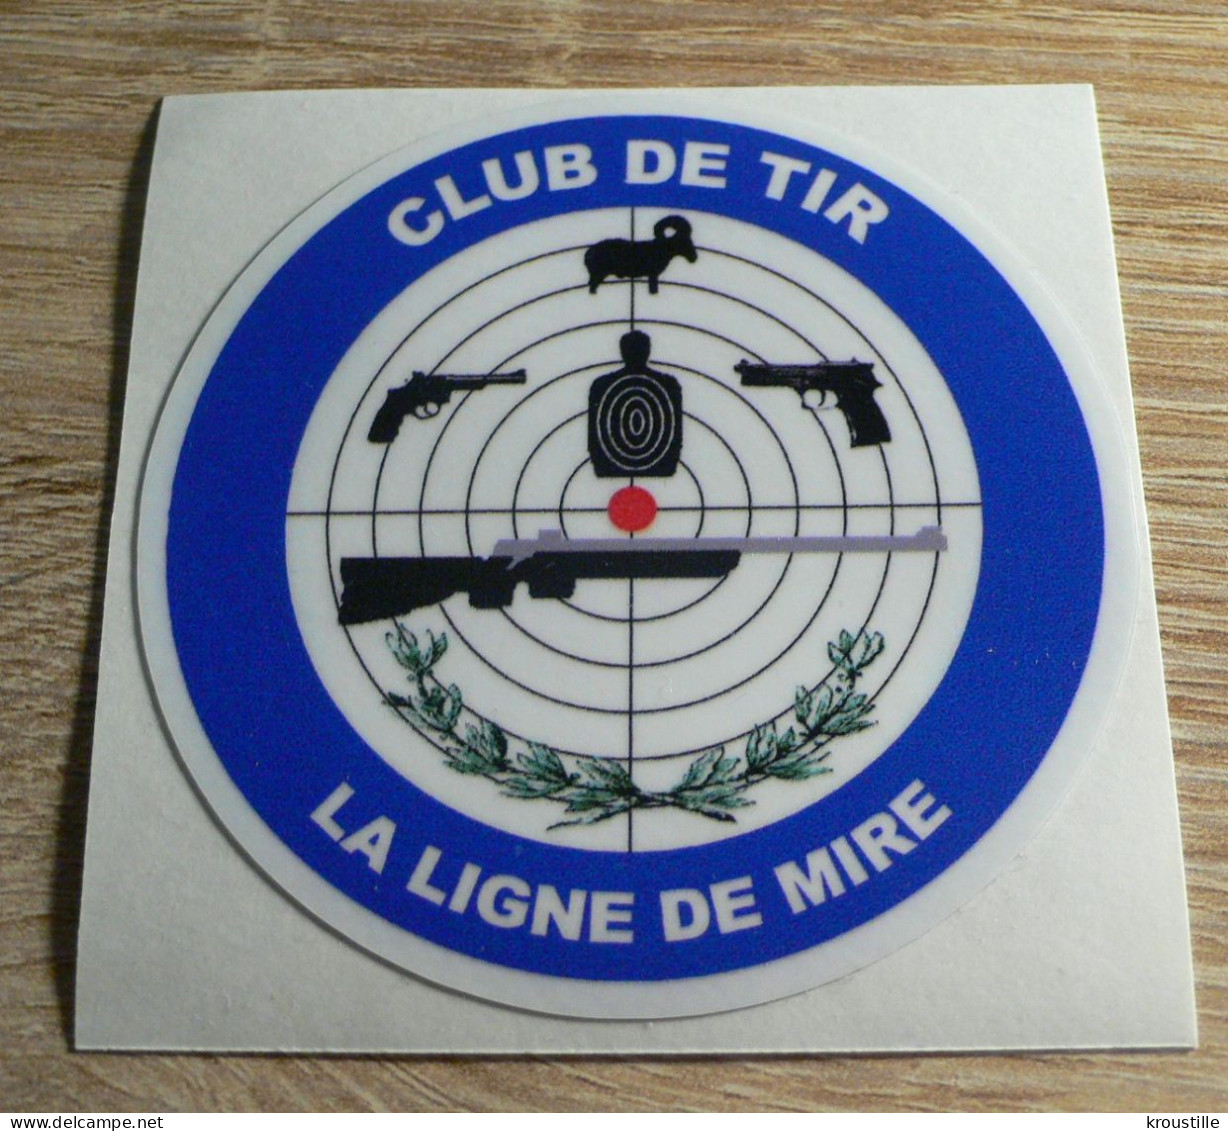 AUTOCOLLANT CLUB DE TIR LA LIGNE DE MIRE - Autocollants